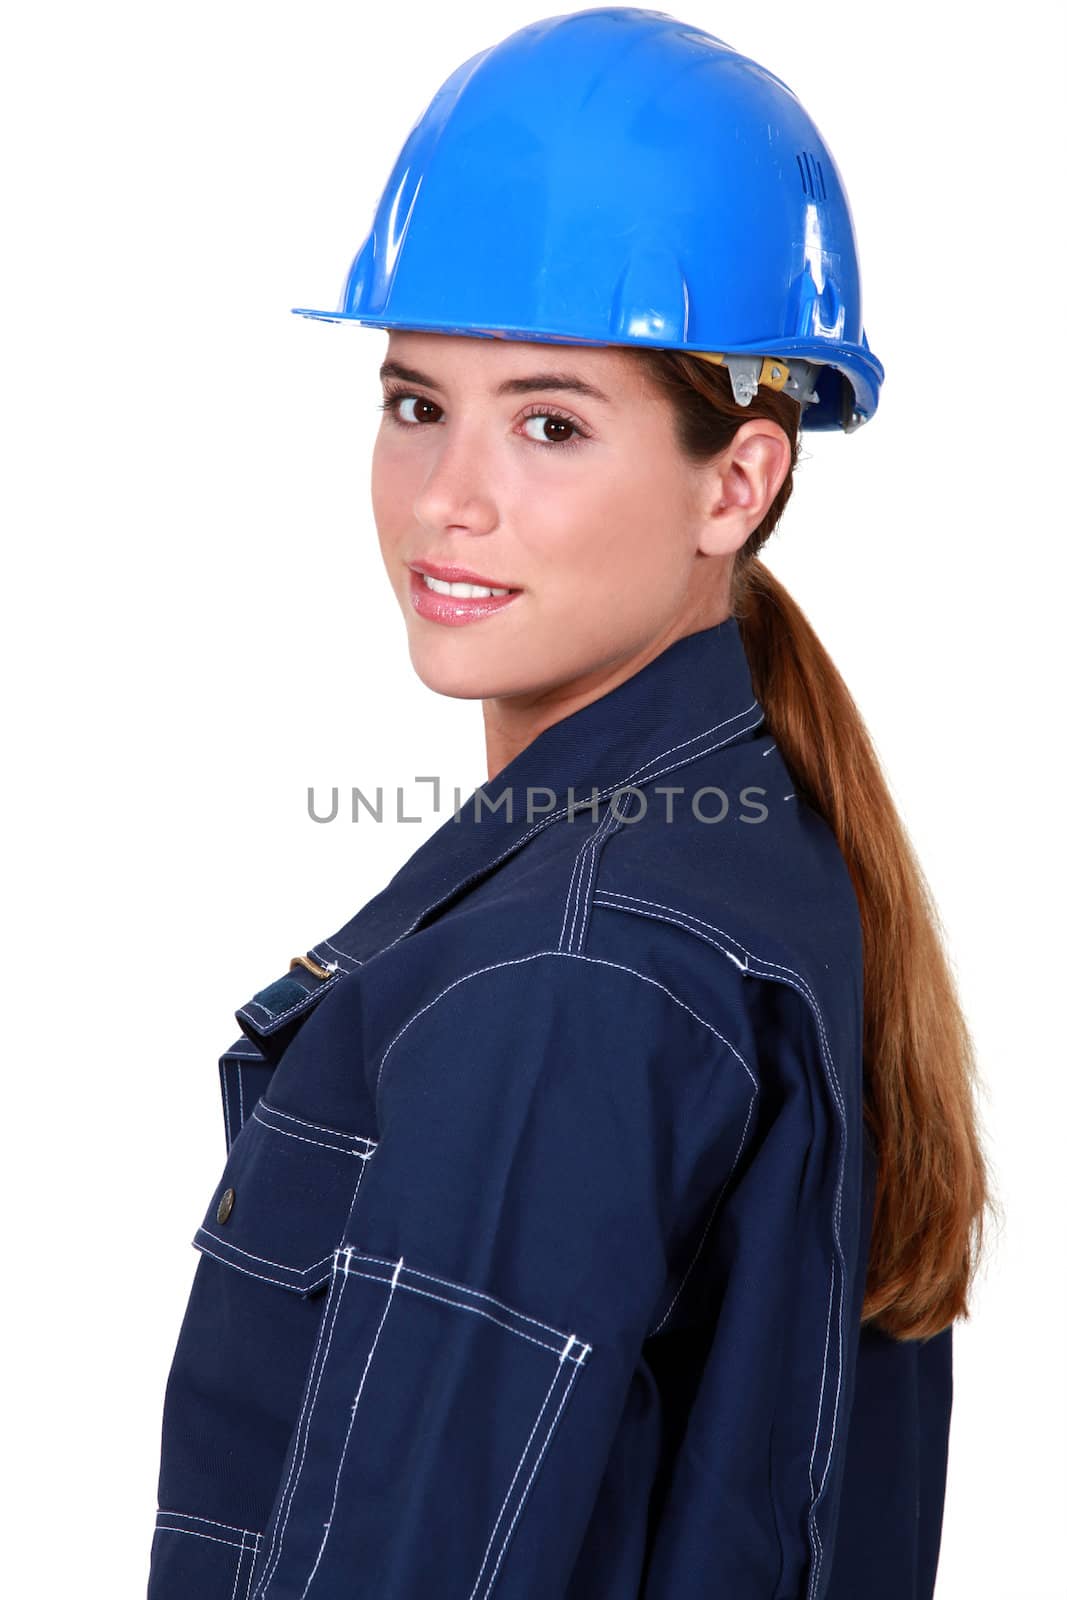 Closeup of a female manual worker